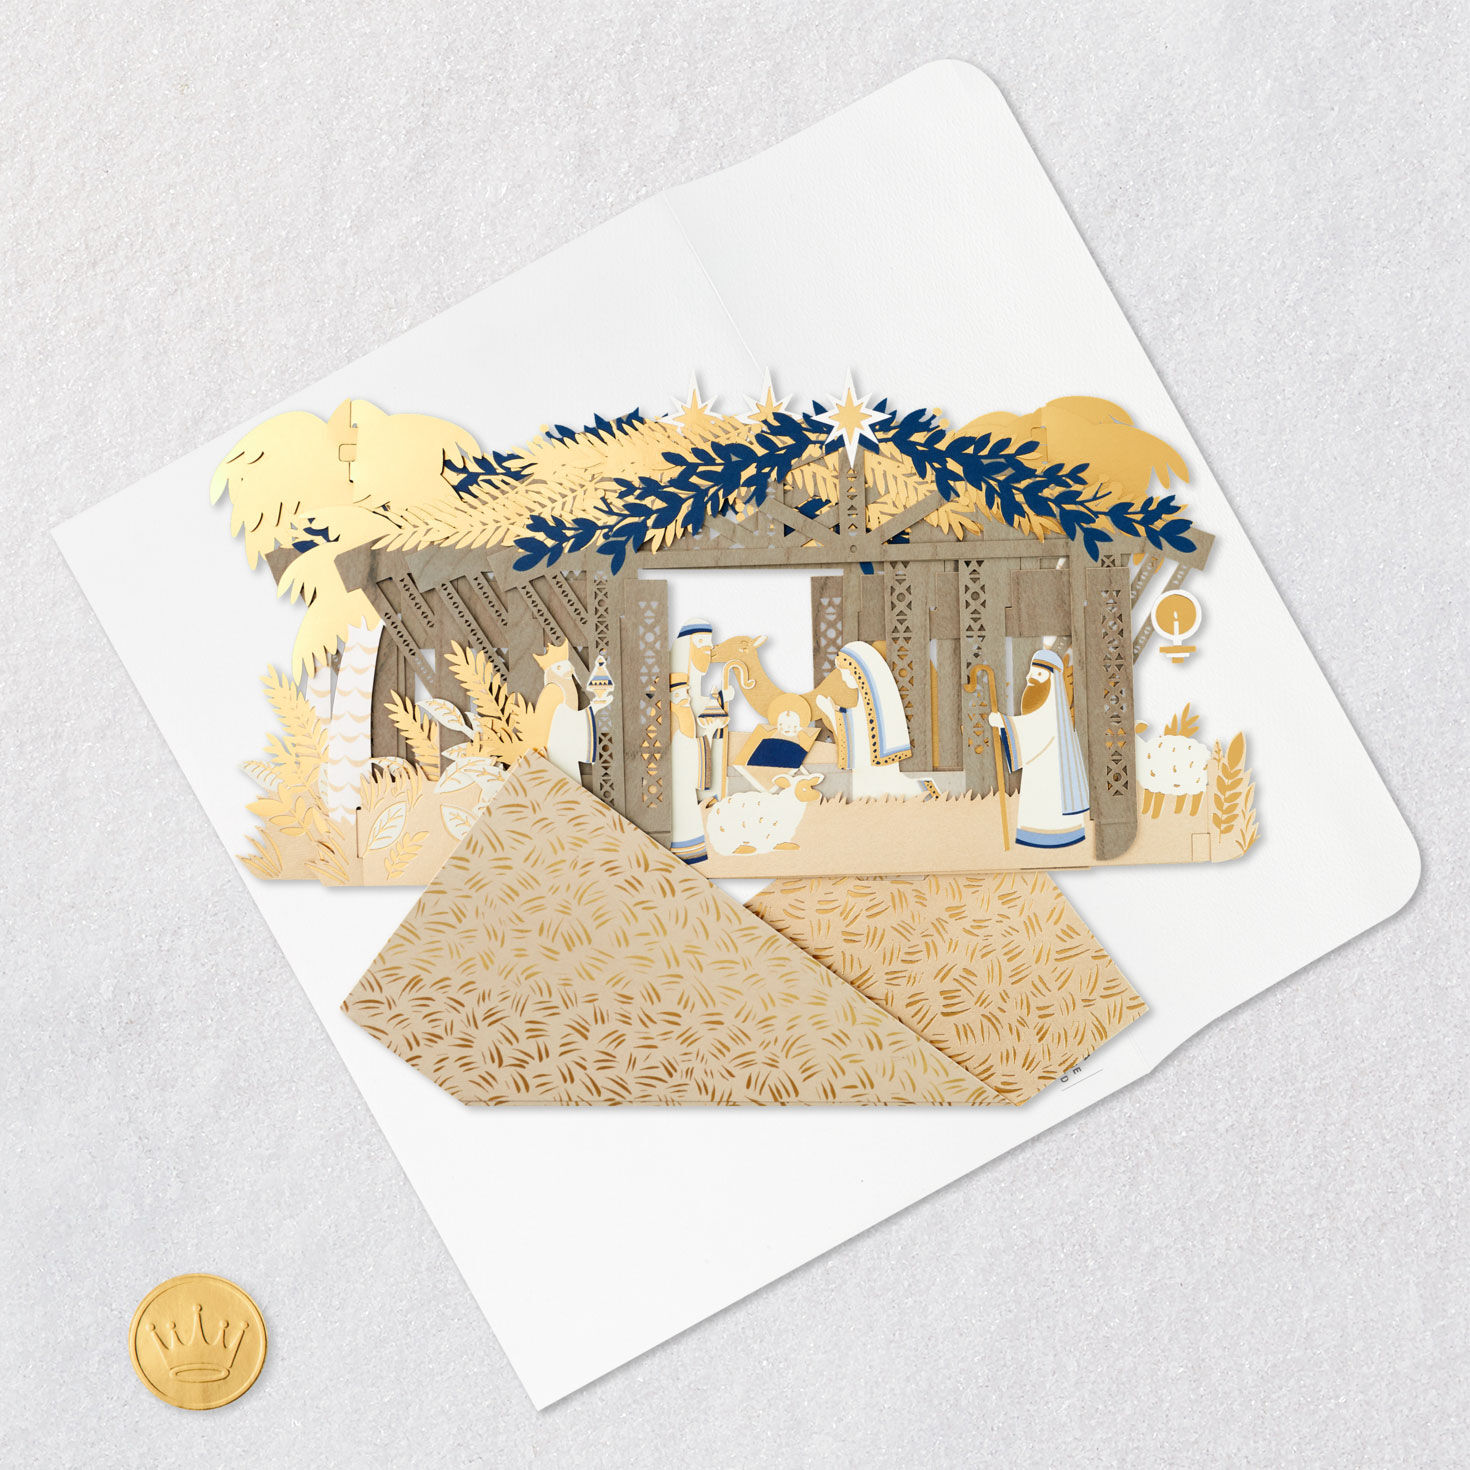 Jumbo Nativity Scene 3D Pop-Up Christmas Card for only USD 24.99 | Hallmark